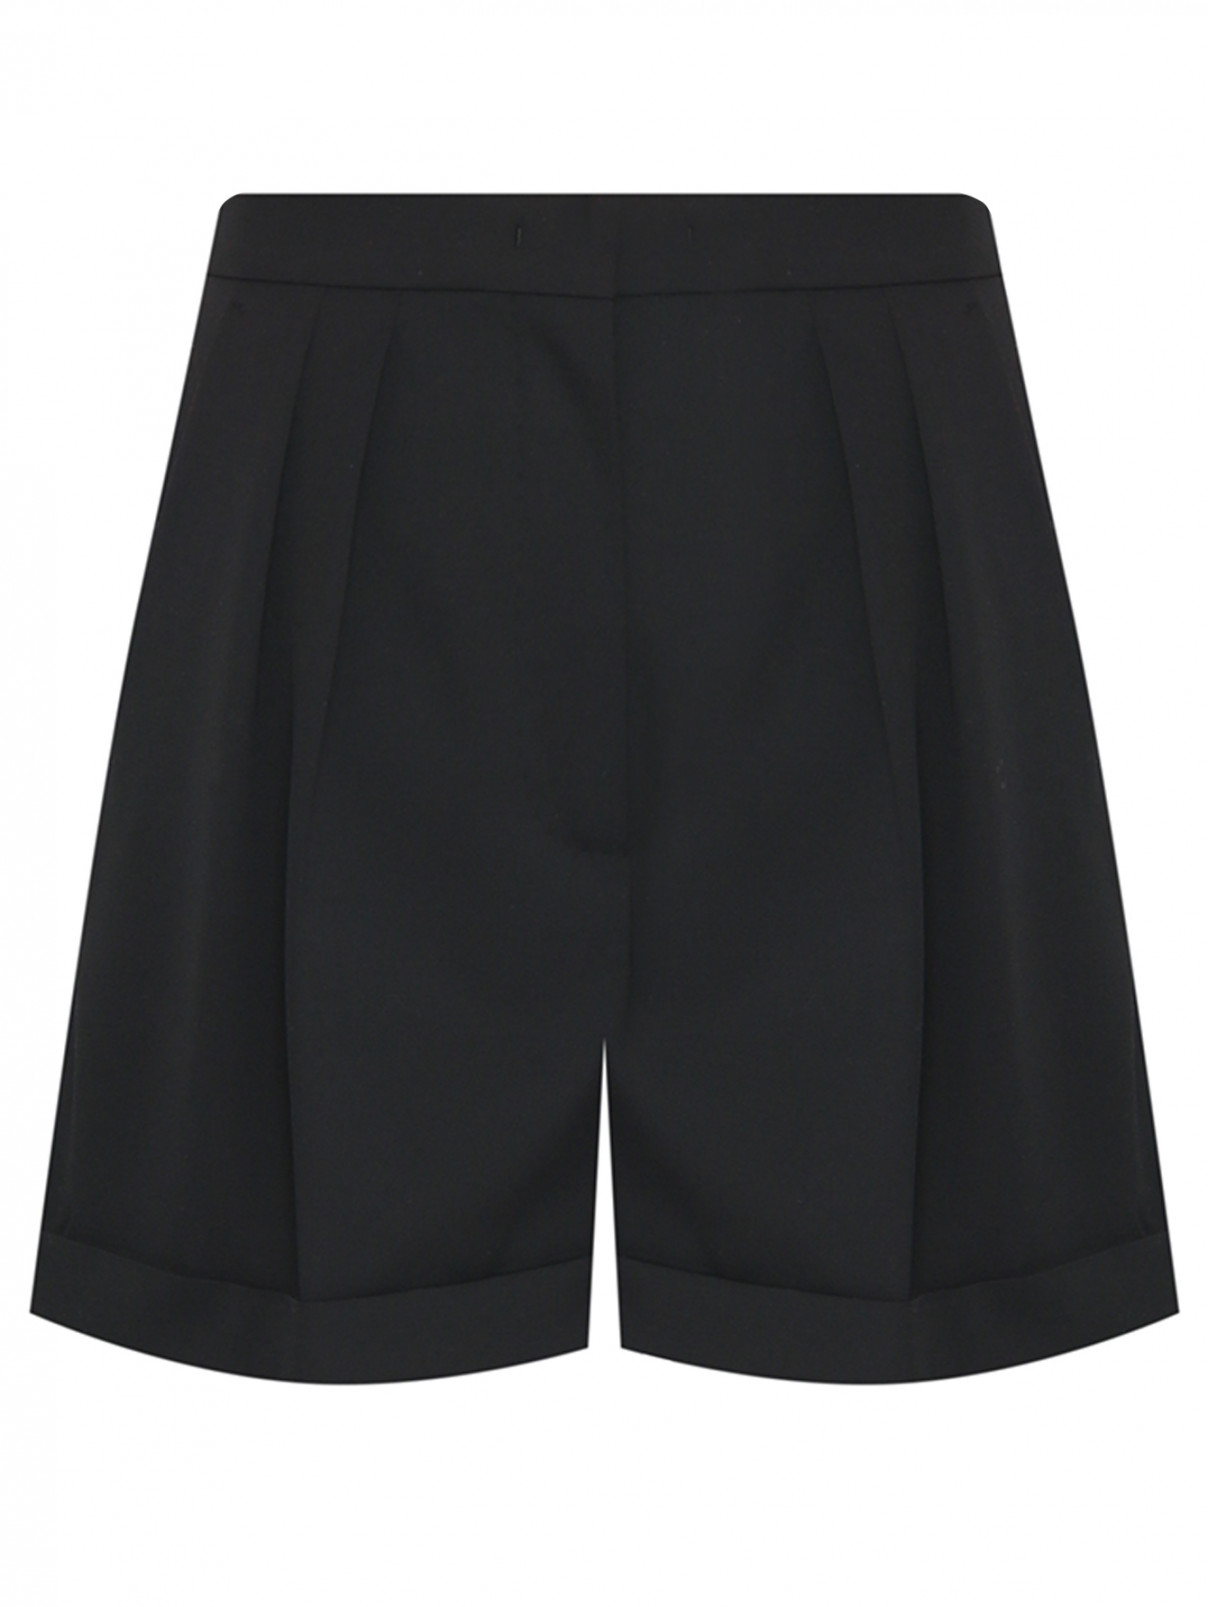 Однотонные шорты из шерсти с карманами Max Mara  –  Общий вид  – Цвет:  Черный